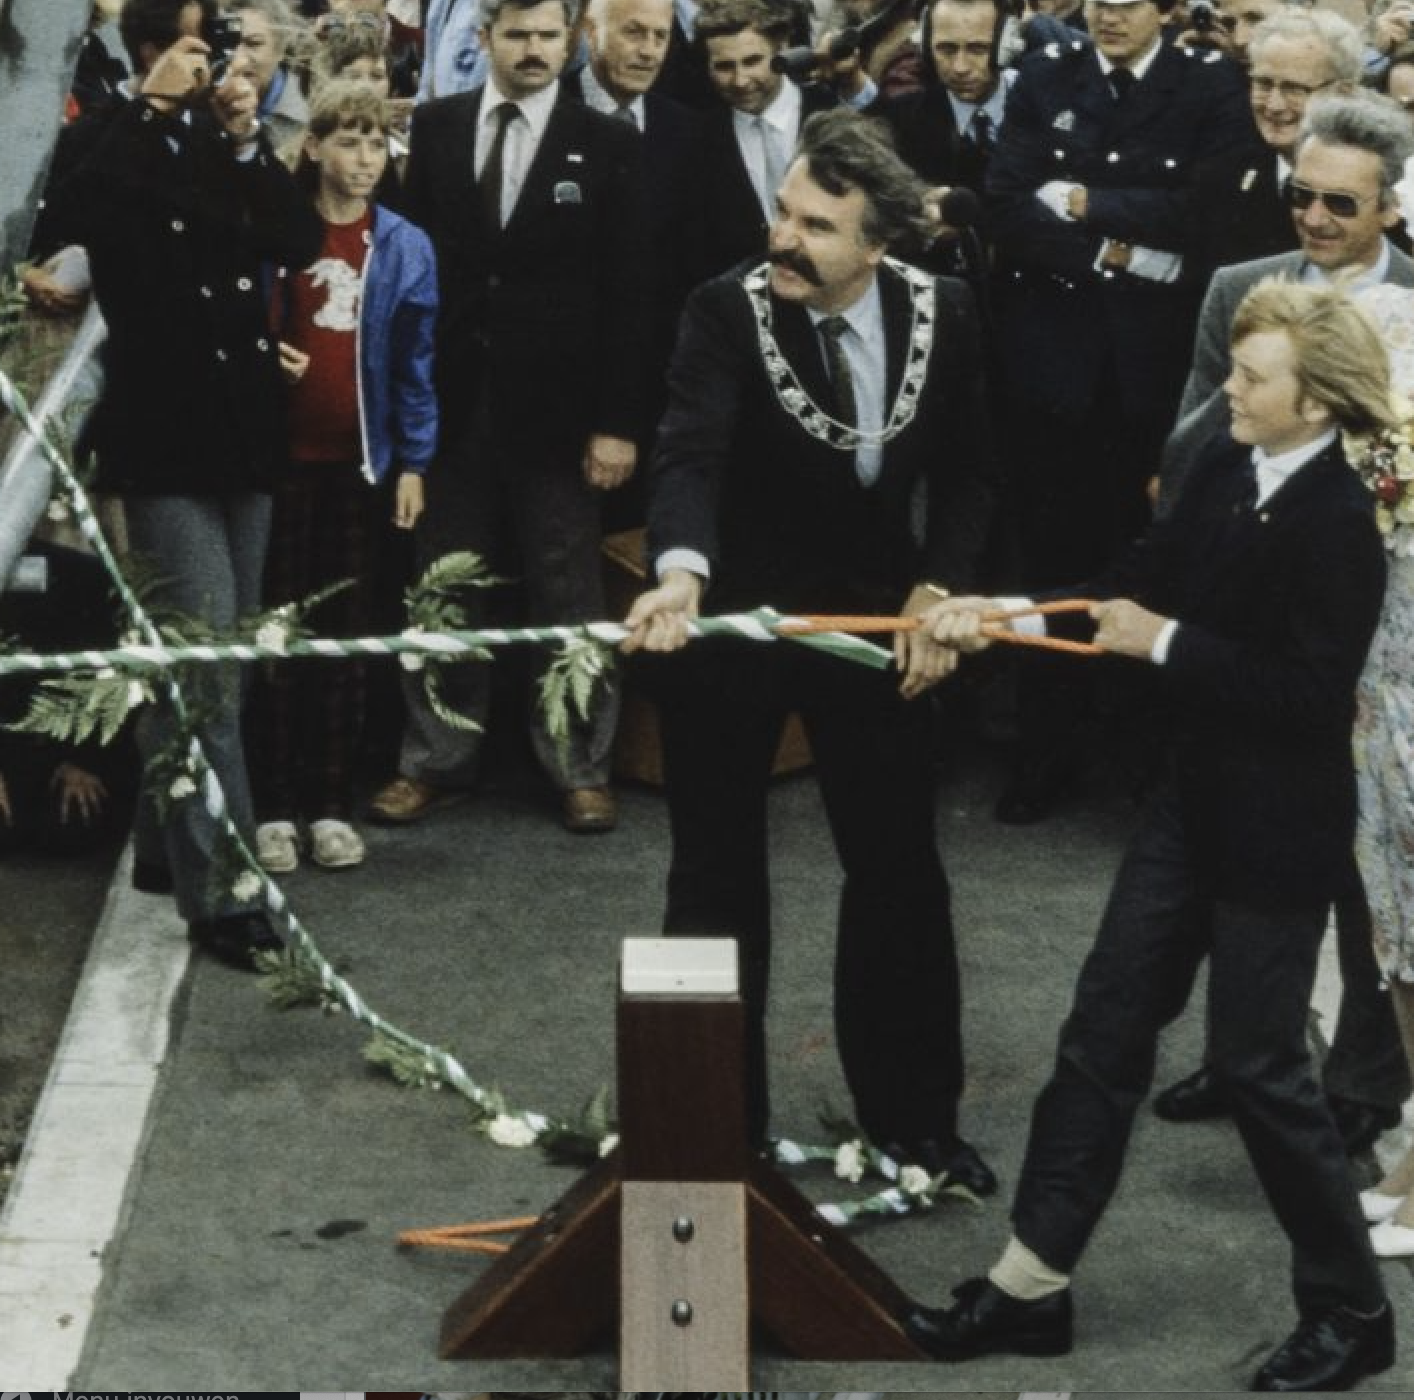 Bijgestaan door koningin Beatrix en burgemeester Van der Louw opent prins Willem-Alexander de nieuwe Willemsbrug.